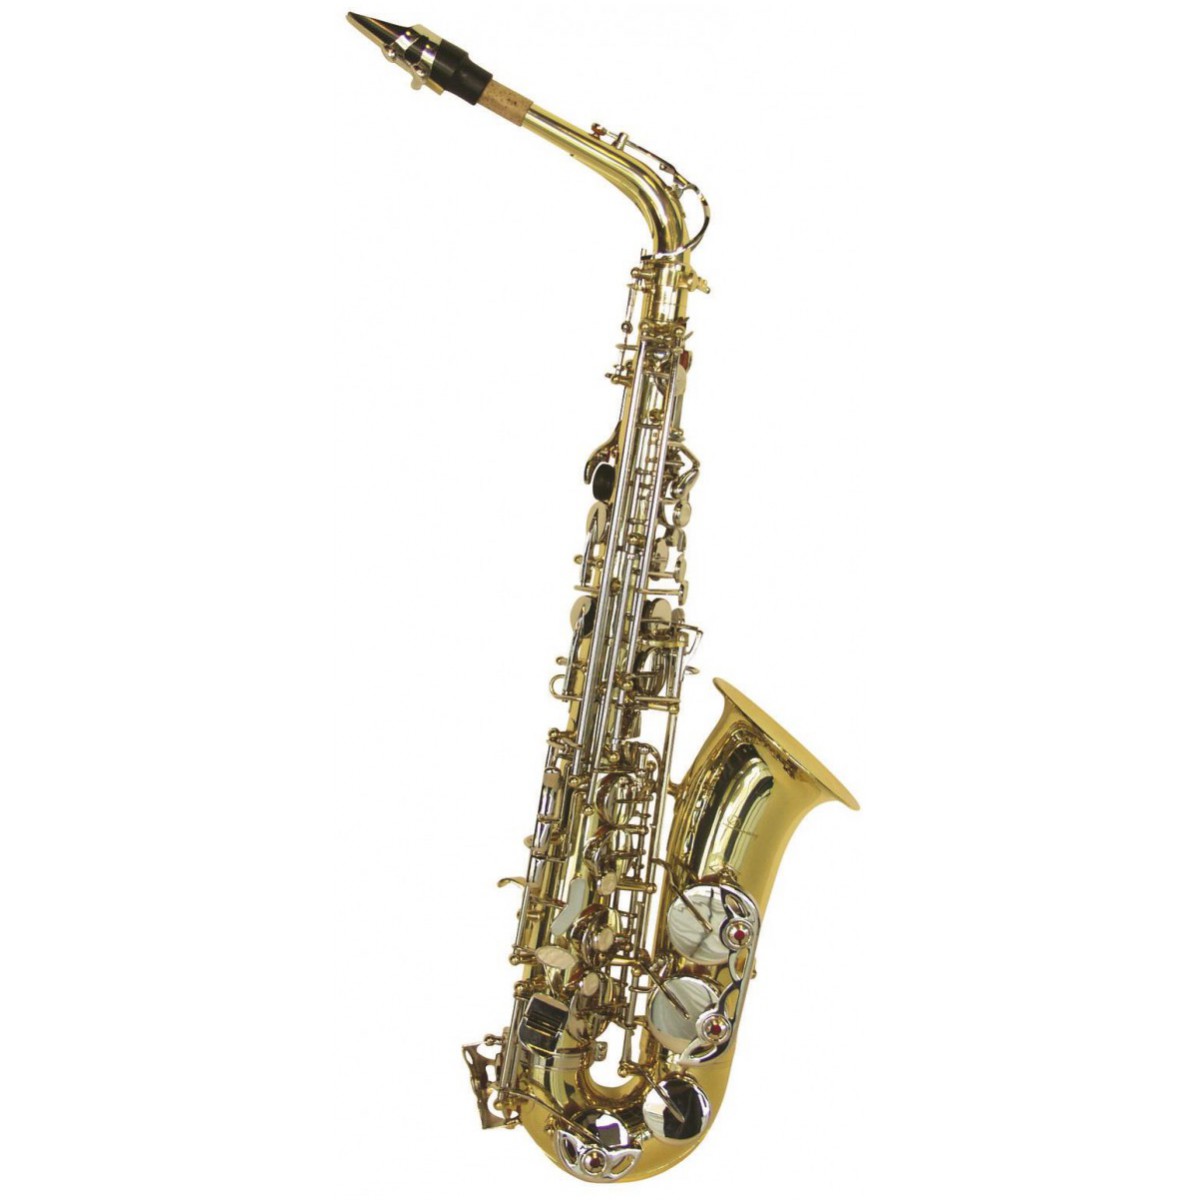 Fotografie Dimavery SP-30 Es alt saxofon